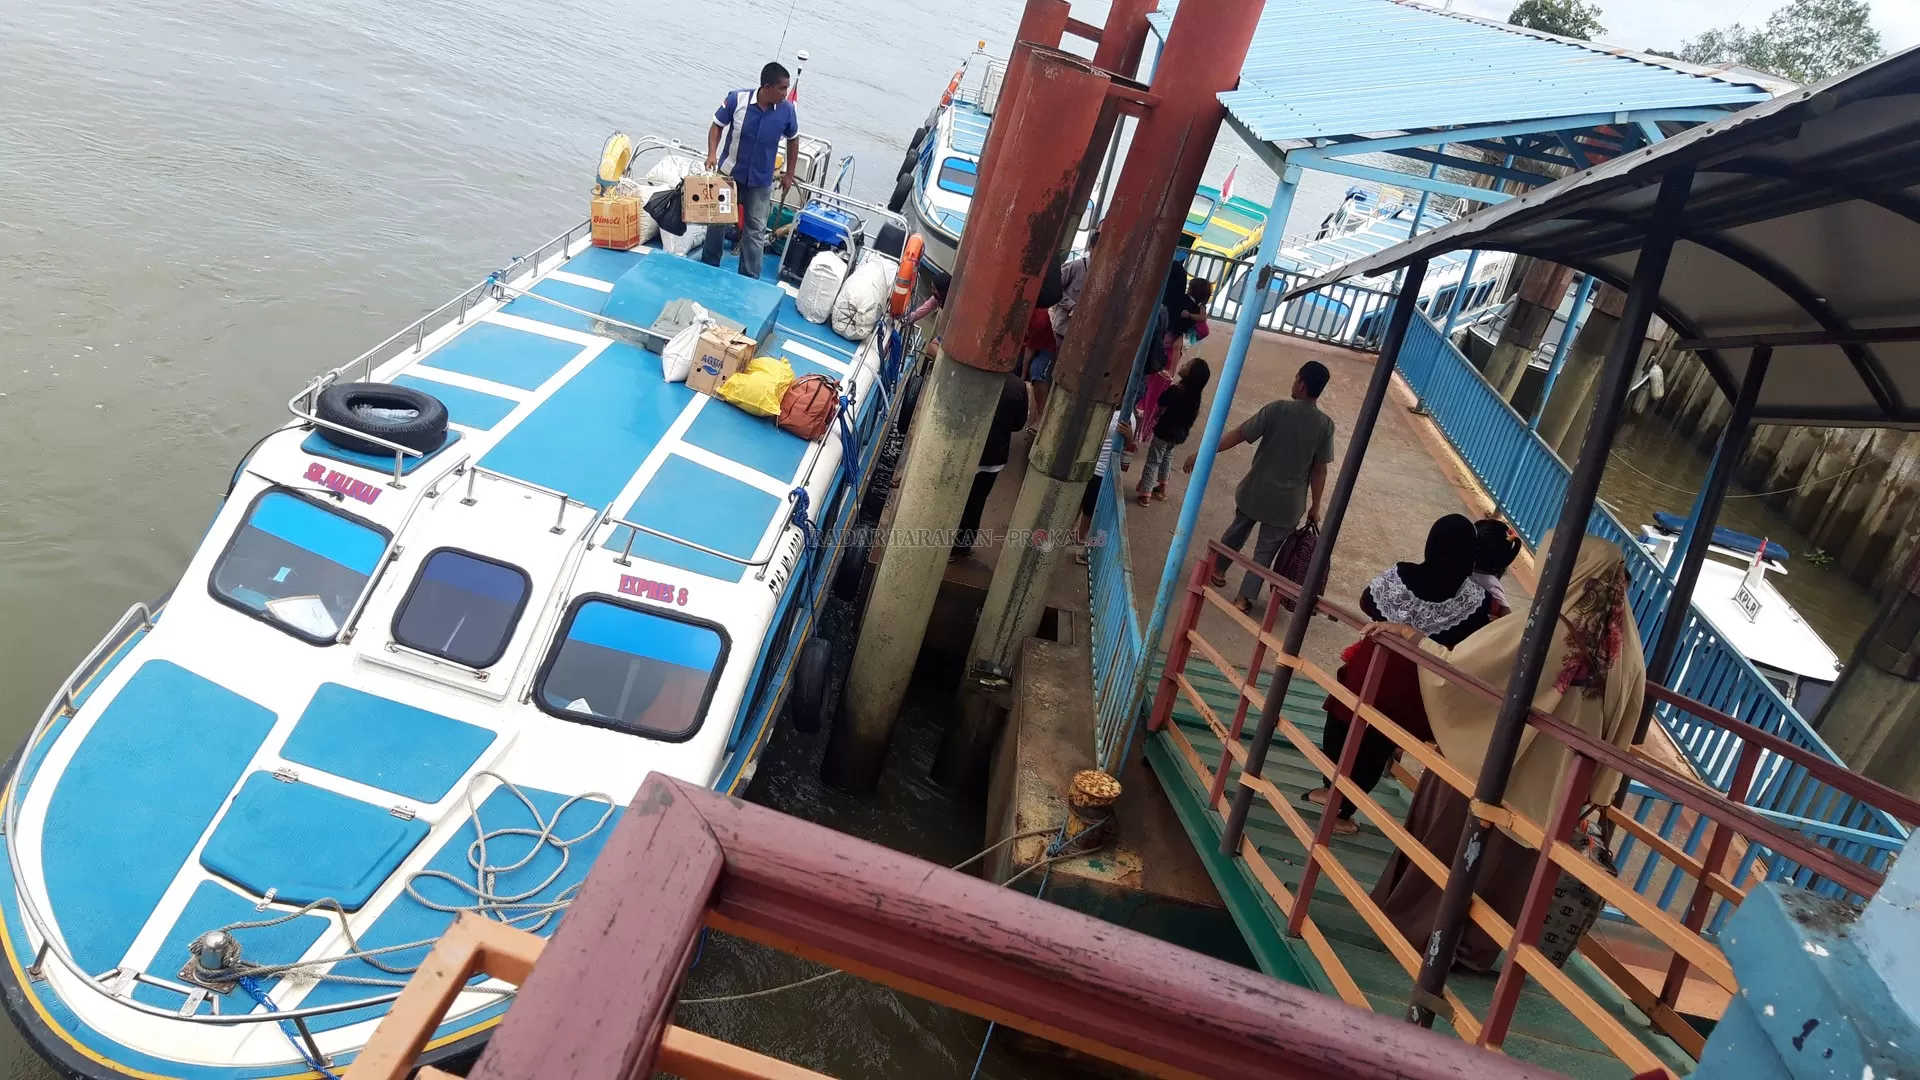 MELAYANI LAGI: Tampak Speedboat Malinau Express saat sandar dan memuat penumpang tujuan Tarakan di Pelabuhan Speedboat Malinau, Selasa (7/1).